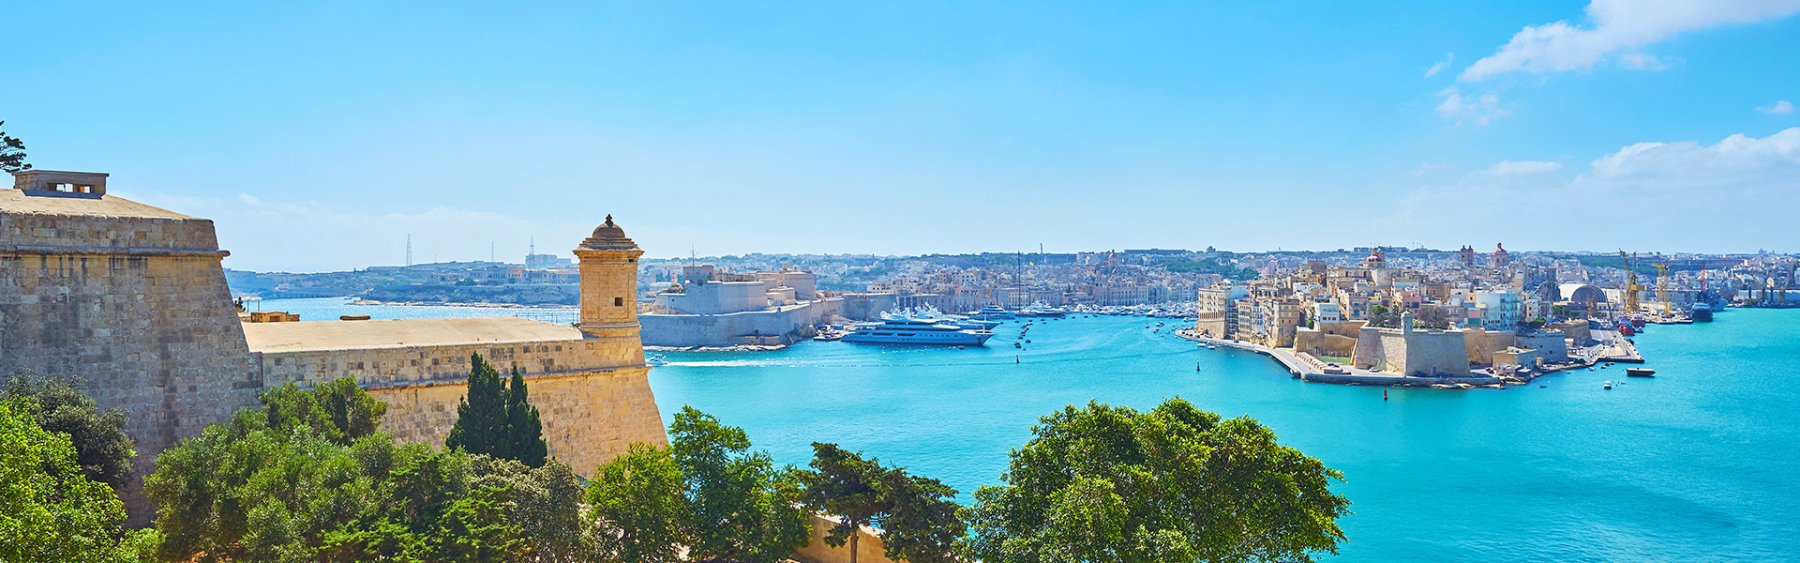 0 schöne Ferienhäuser auf Malta warten auf Dich